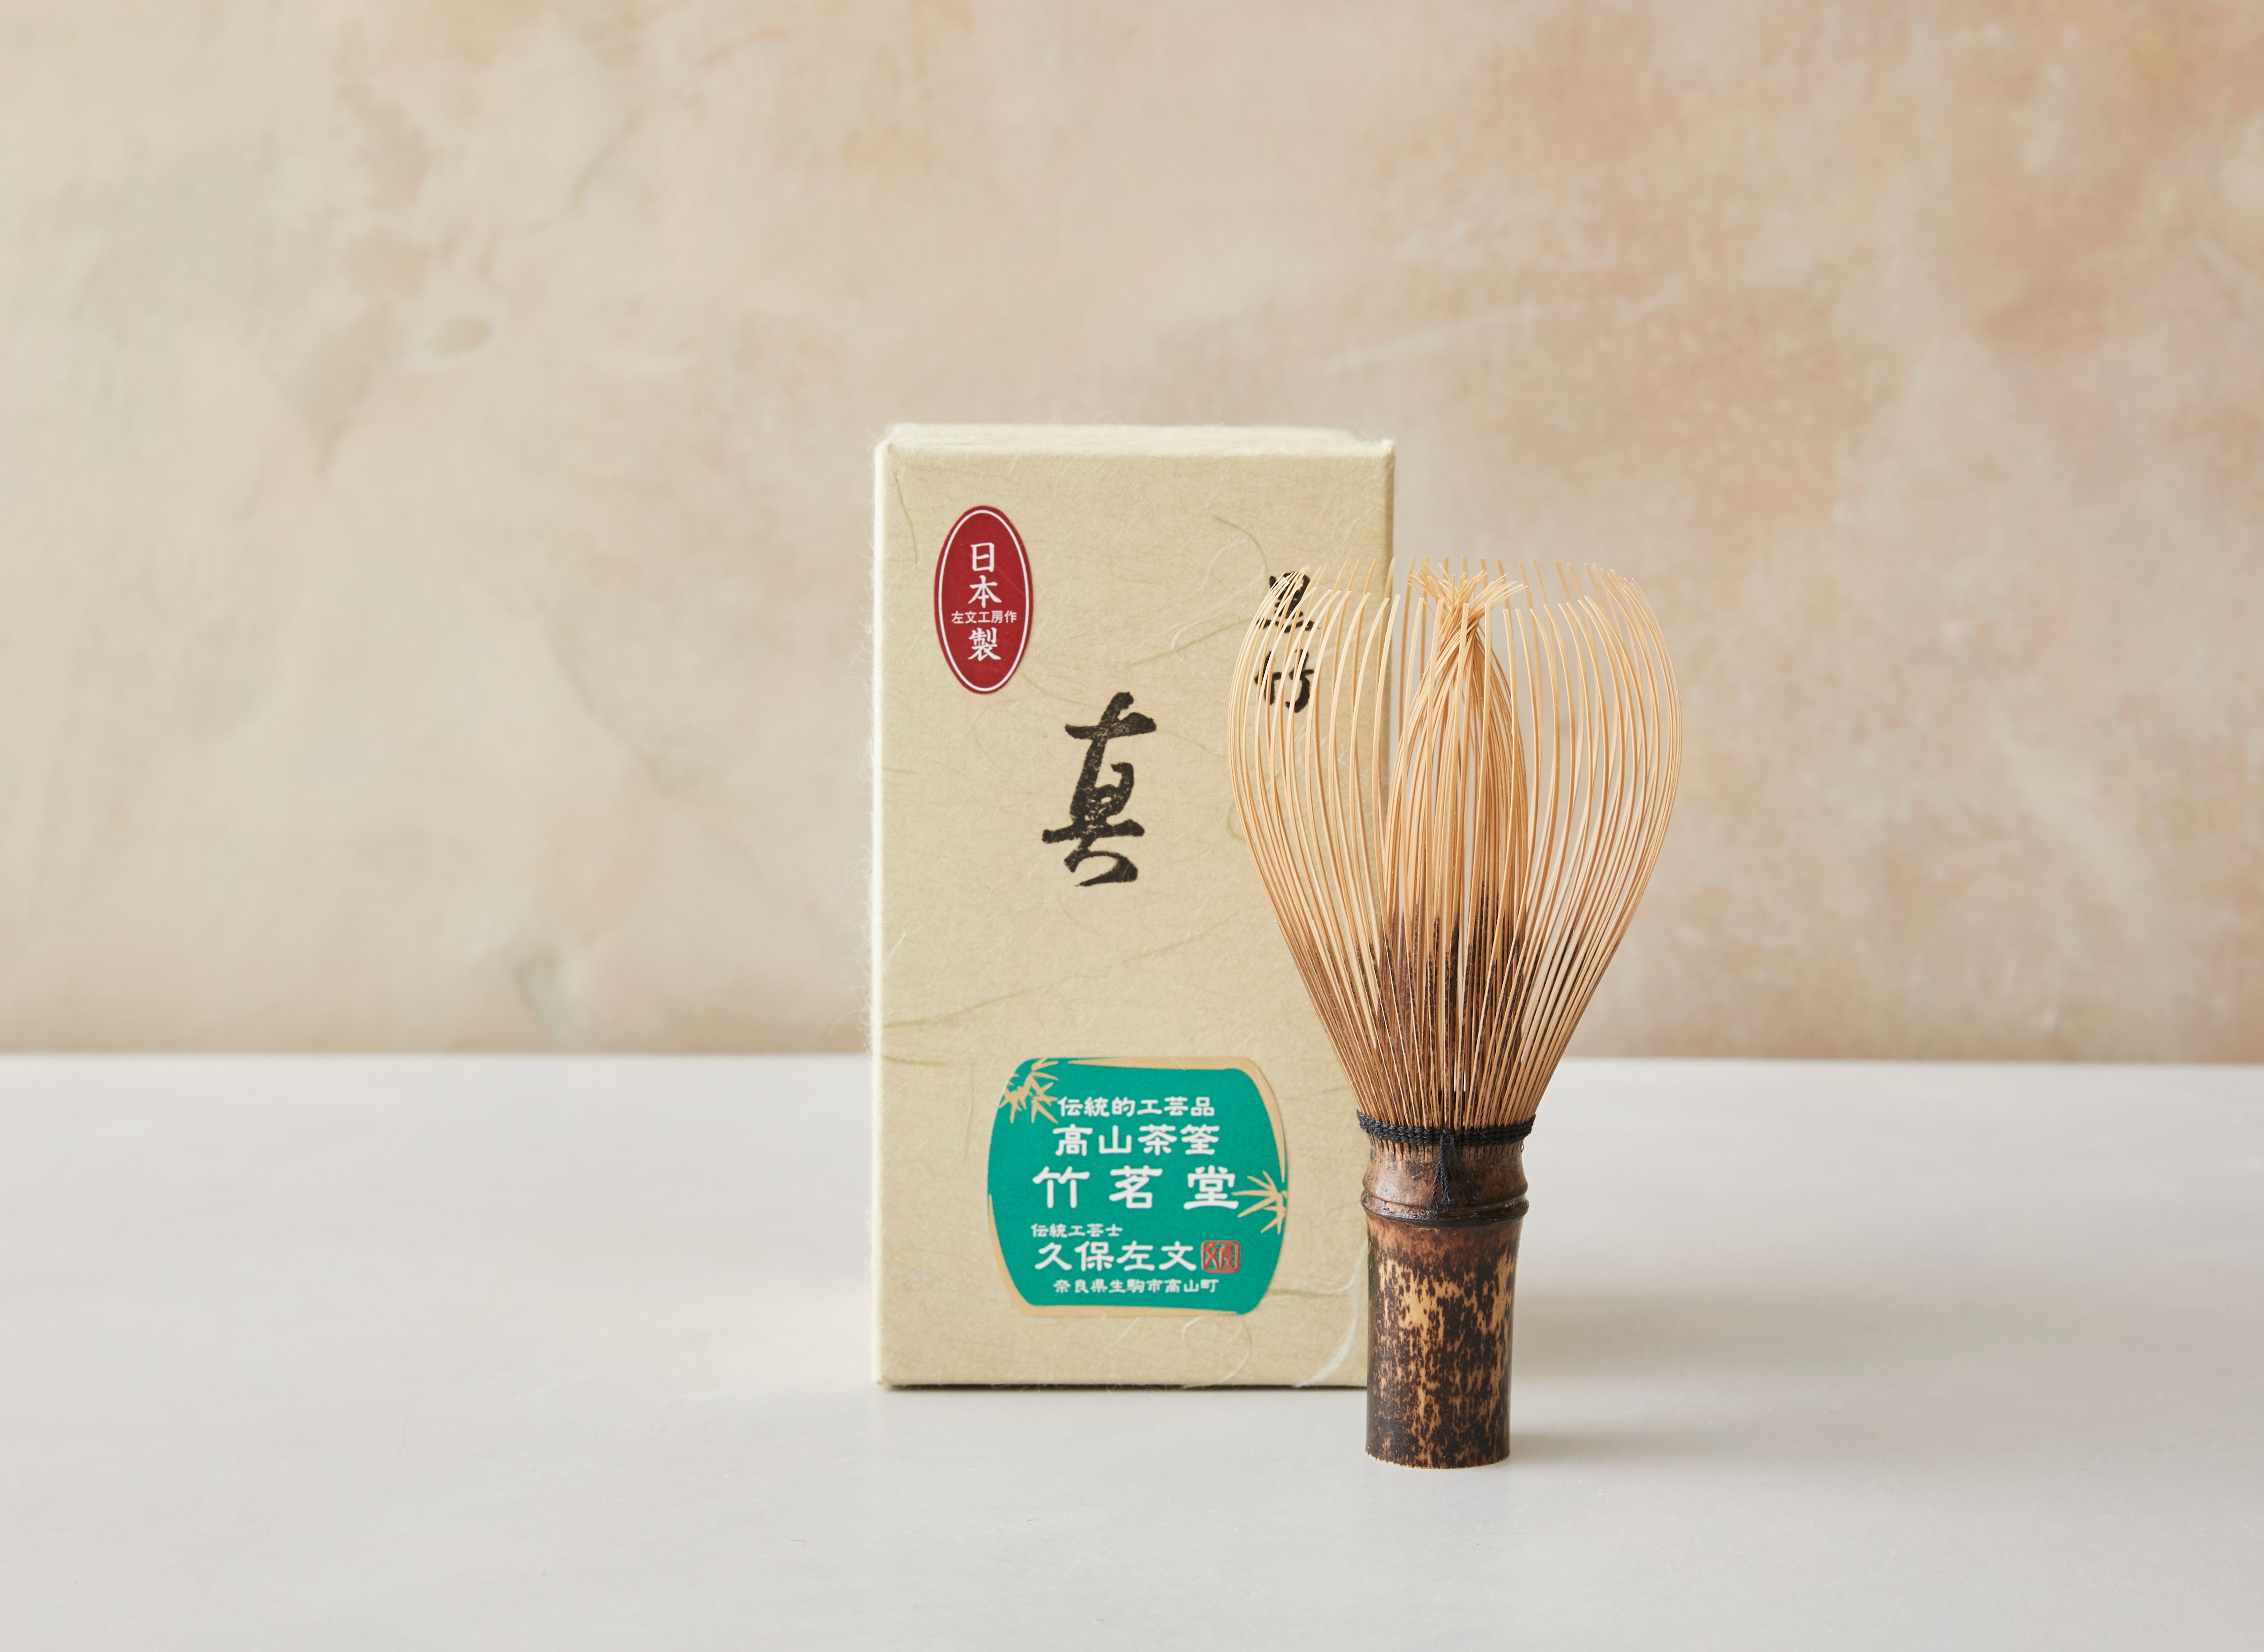 Hakeeta Matcha Whisk, Traditional Natural Bamboo Chasen, Japanese